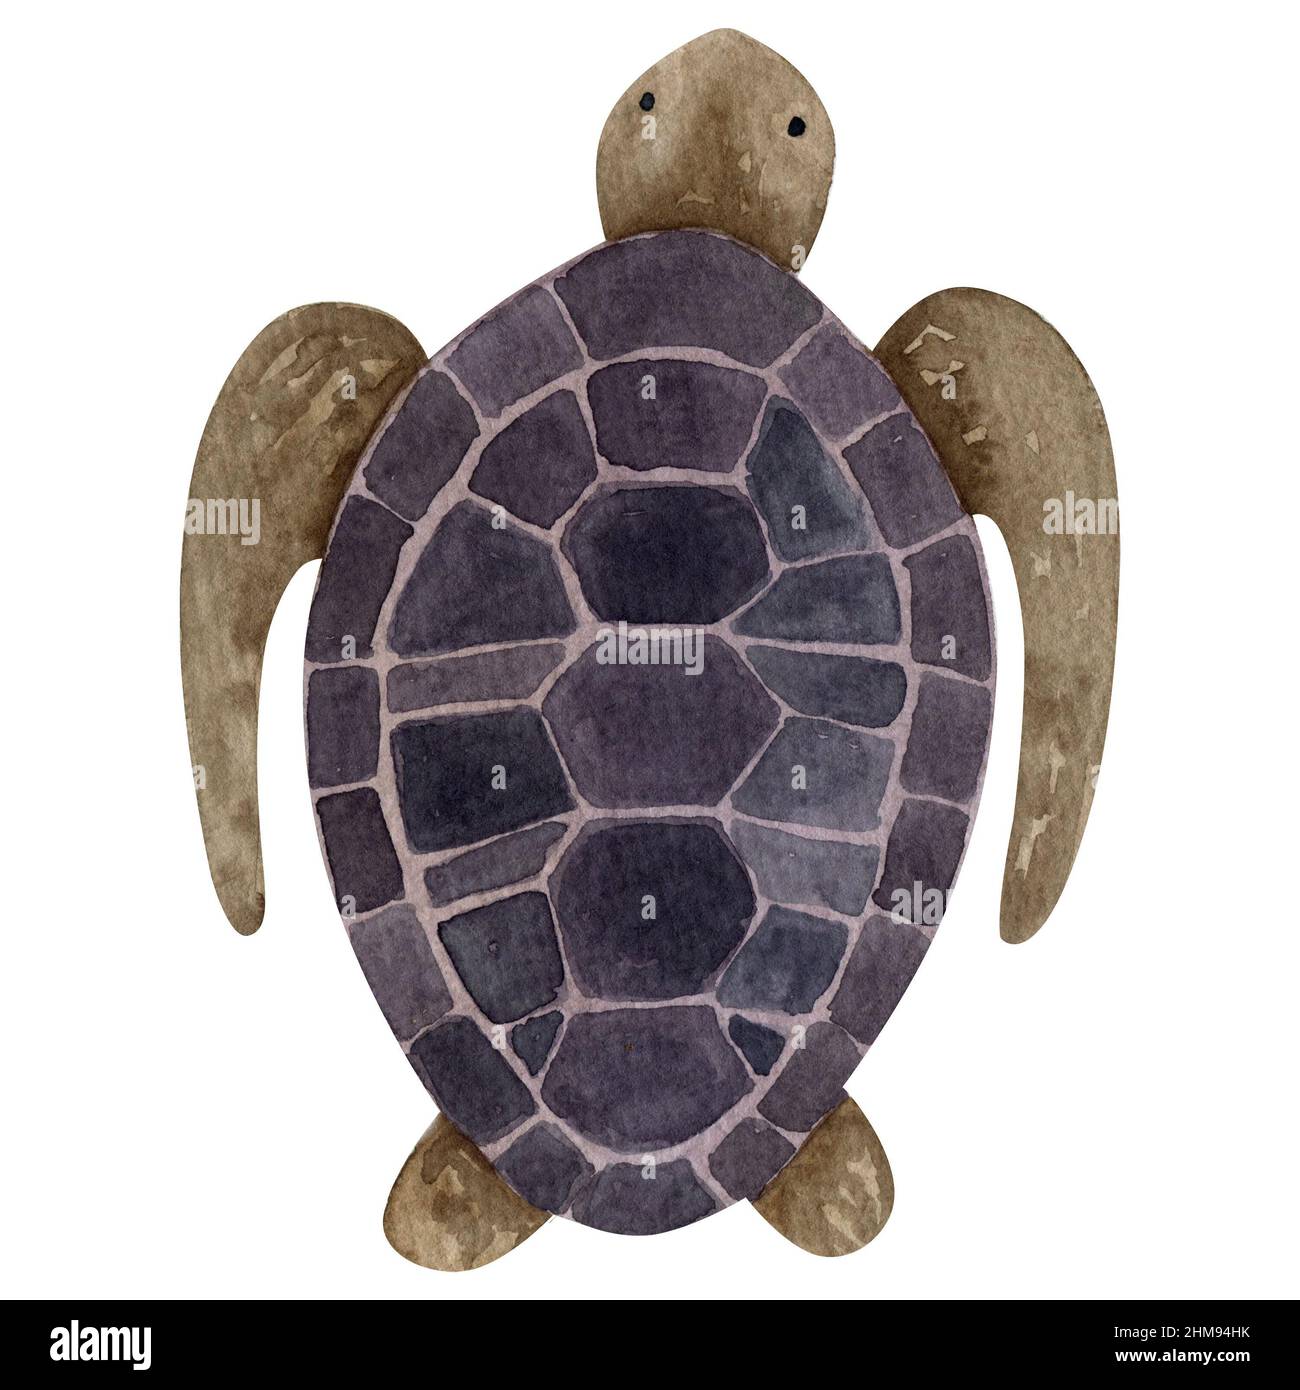 Illustrazione tartaruga acquerello su sfondo bianco, pittura vita marina, illustrazione creatura oceanica, arte animale subacquea, tartaruga marina isolata Foto Stock